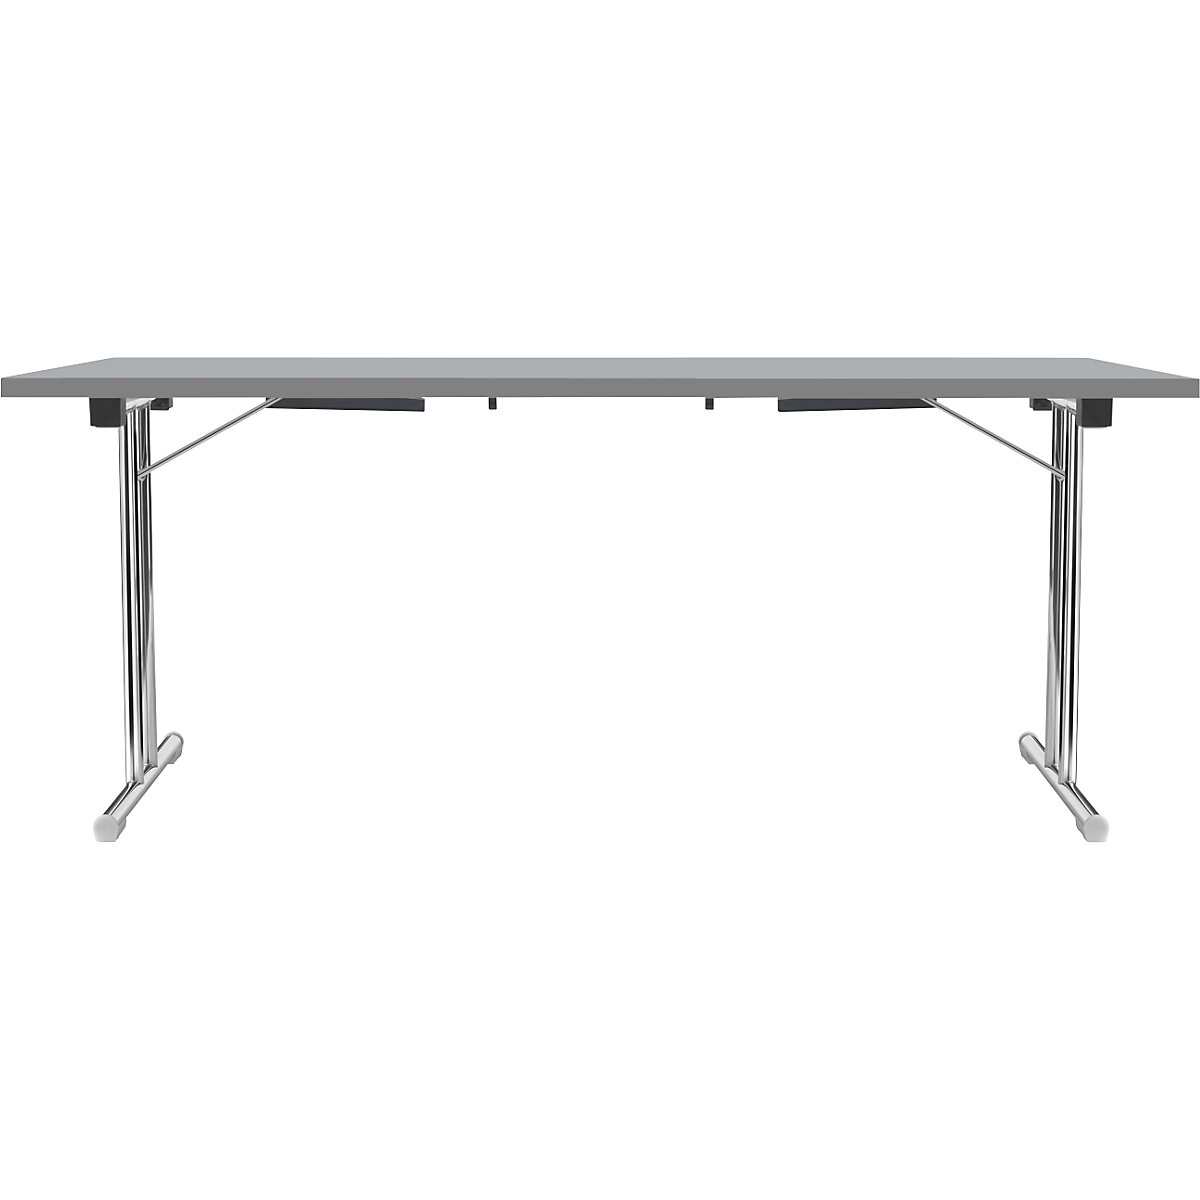 Zložljiva miza z dvojnim podnožjem v obliki črke T, ogrodje iz okrogle jeklene cevi, kromirano, svetlo siva/antracitna, ŠxG 1800 x 800 mm-13